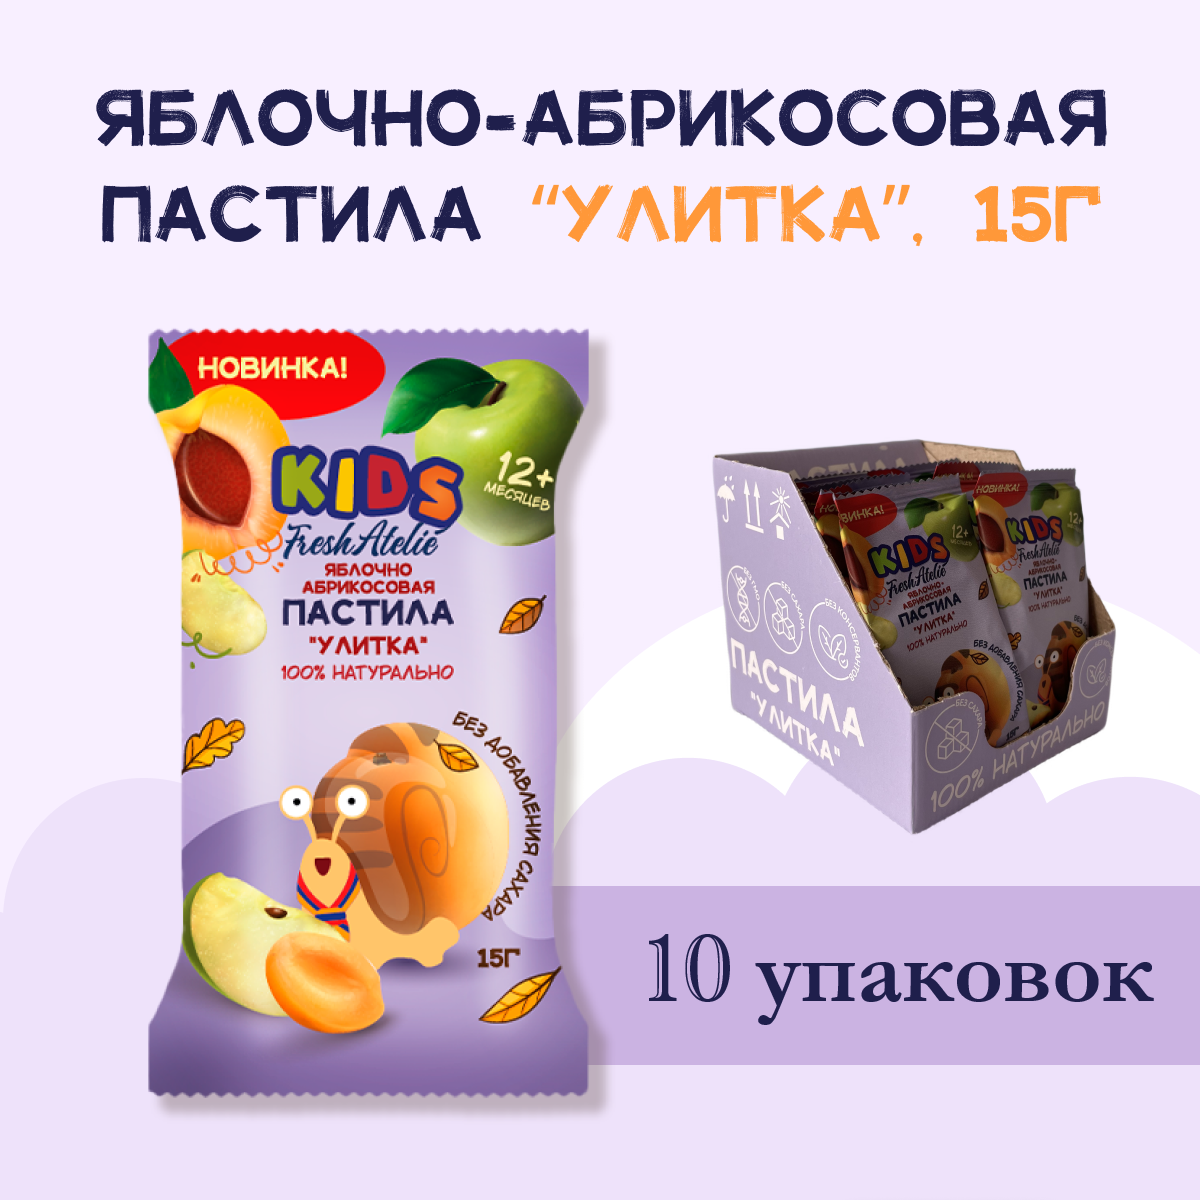 Пастила Яблочно-Абрикосовая для детей FRESH ATELIE KIDS Улитка 15гр, 10 упаковок вкусняшки для сахарных детей